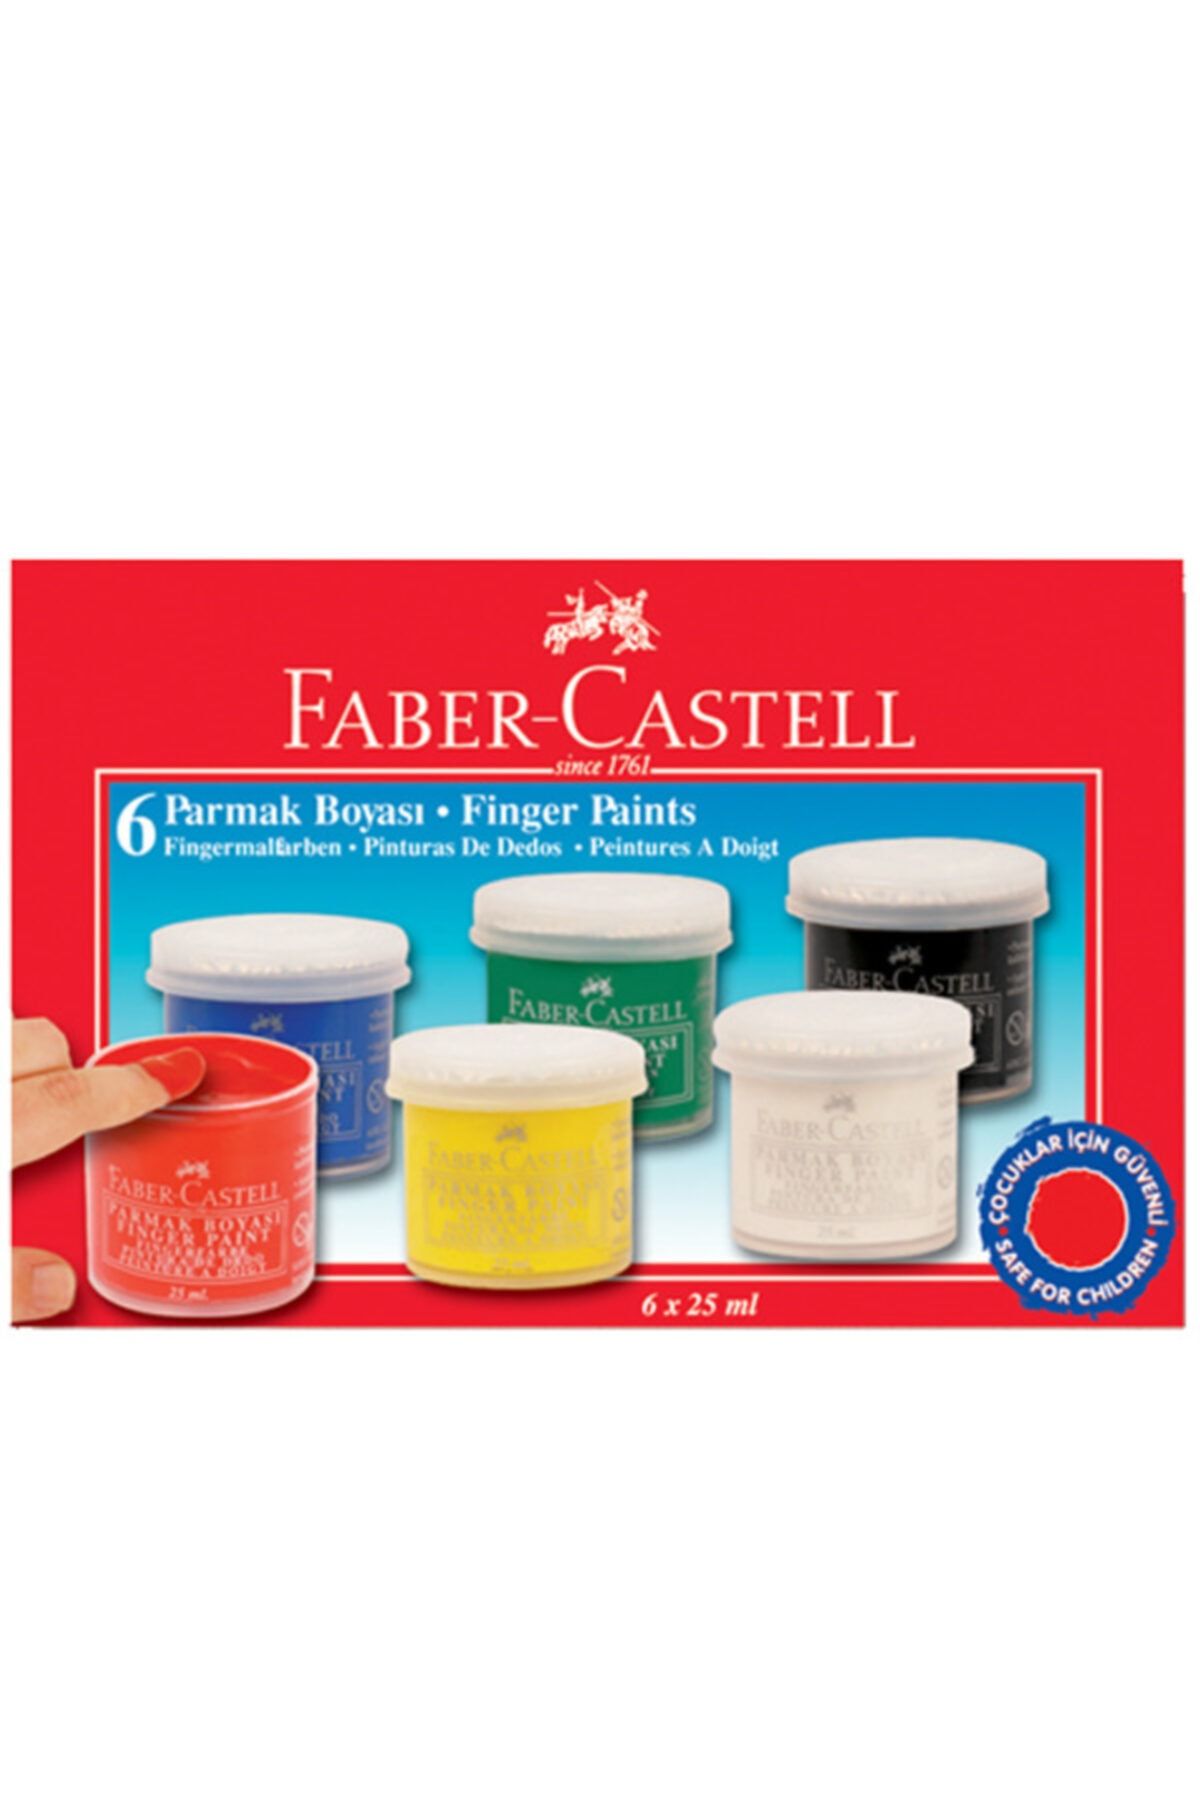 Faber Castell Faber-castell Parmak Boyası 6 Renk 25 ml 5170160402000